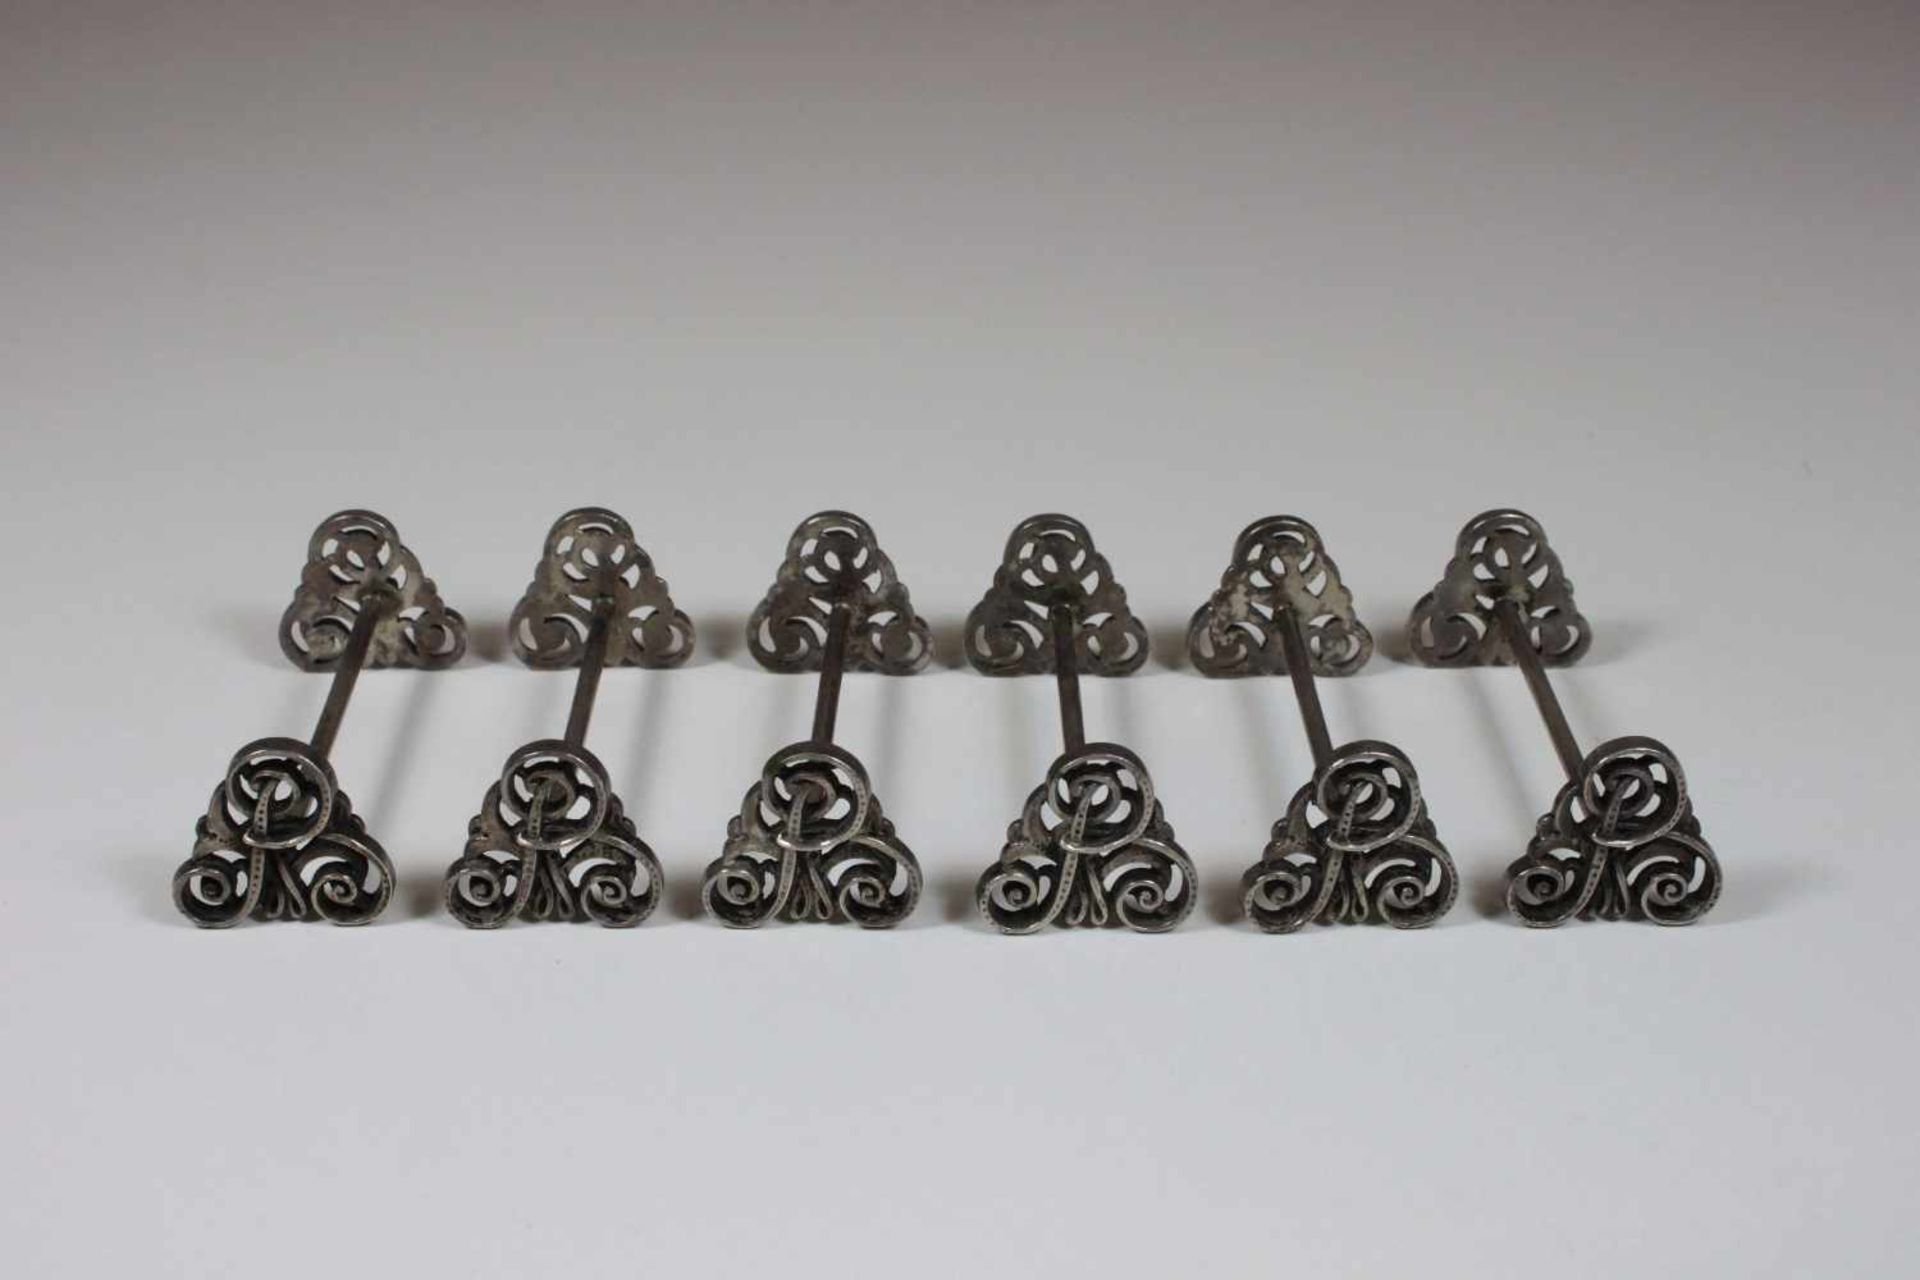 Sechs Messebänkchen, Silber gepunzt 800 Halbmond Krone, Enden mit Zierranken, M: 7 x 2,5 x 2,5 cm,